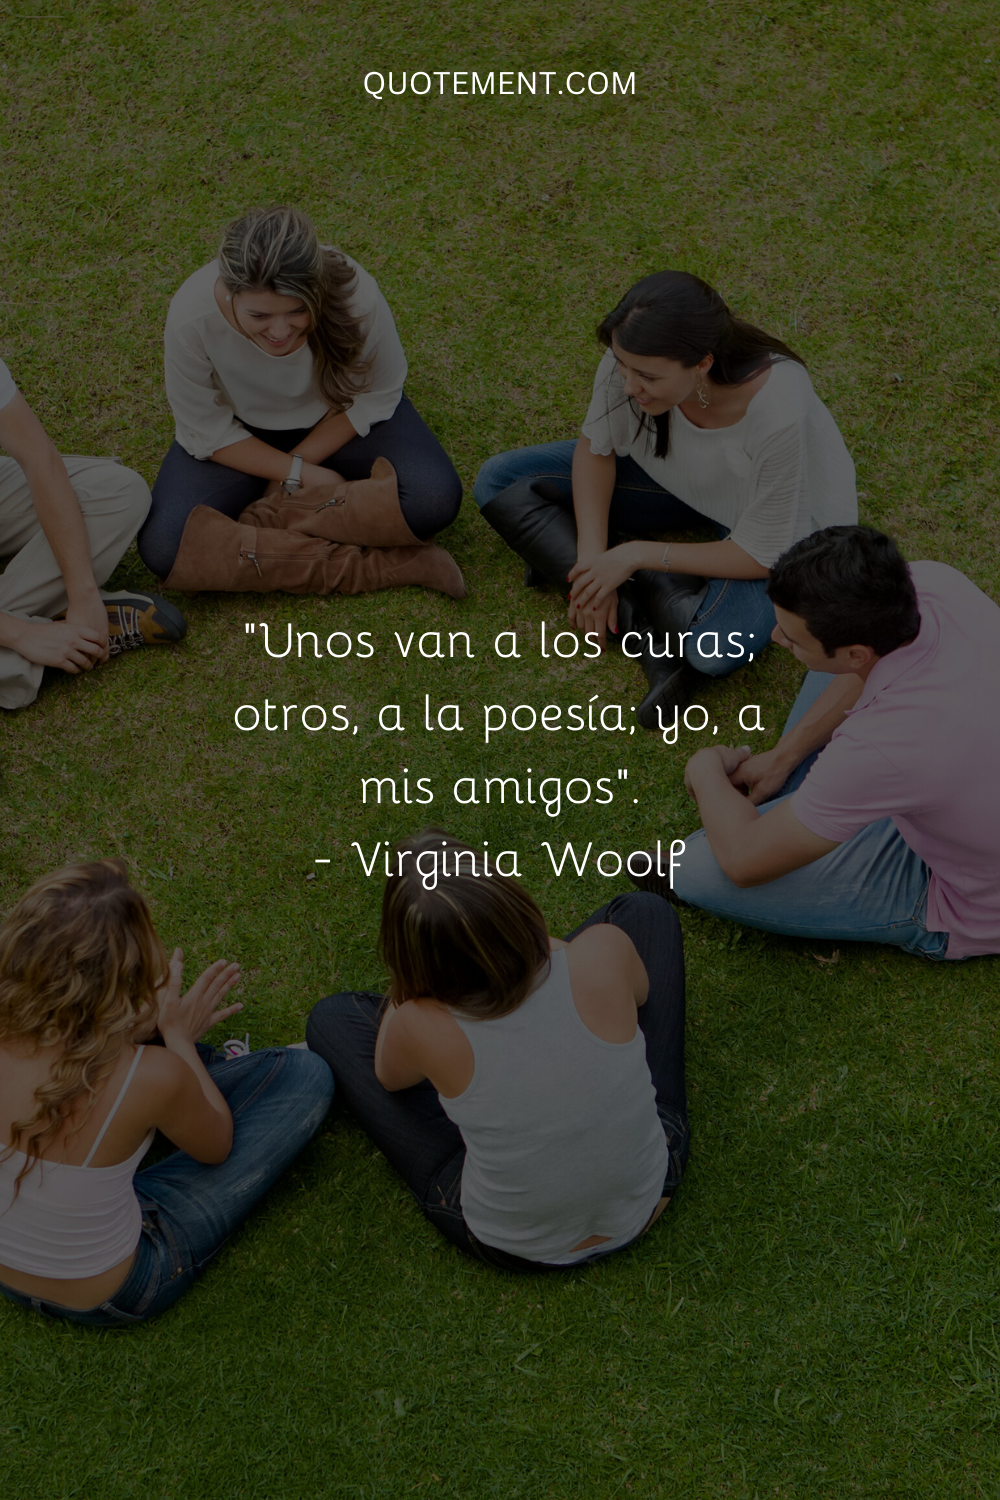 "Algunos acuden a los curas; otros, a la poesía; yo, a mis amigos". - Virginia Woolf